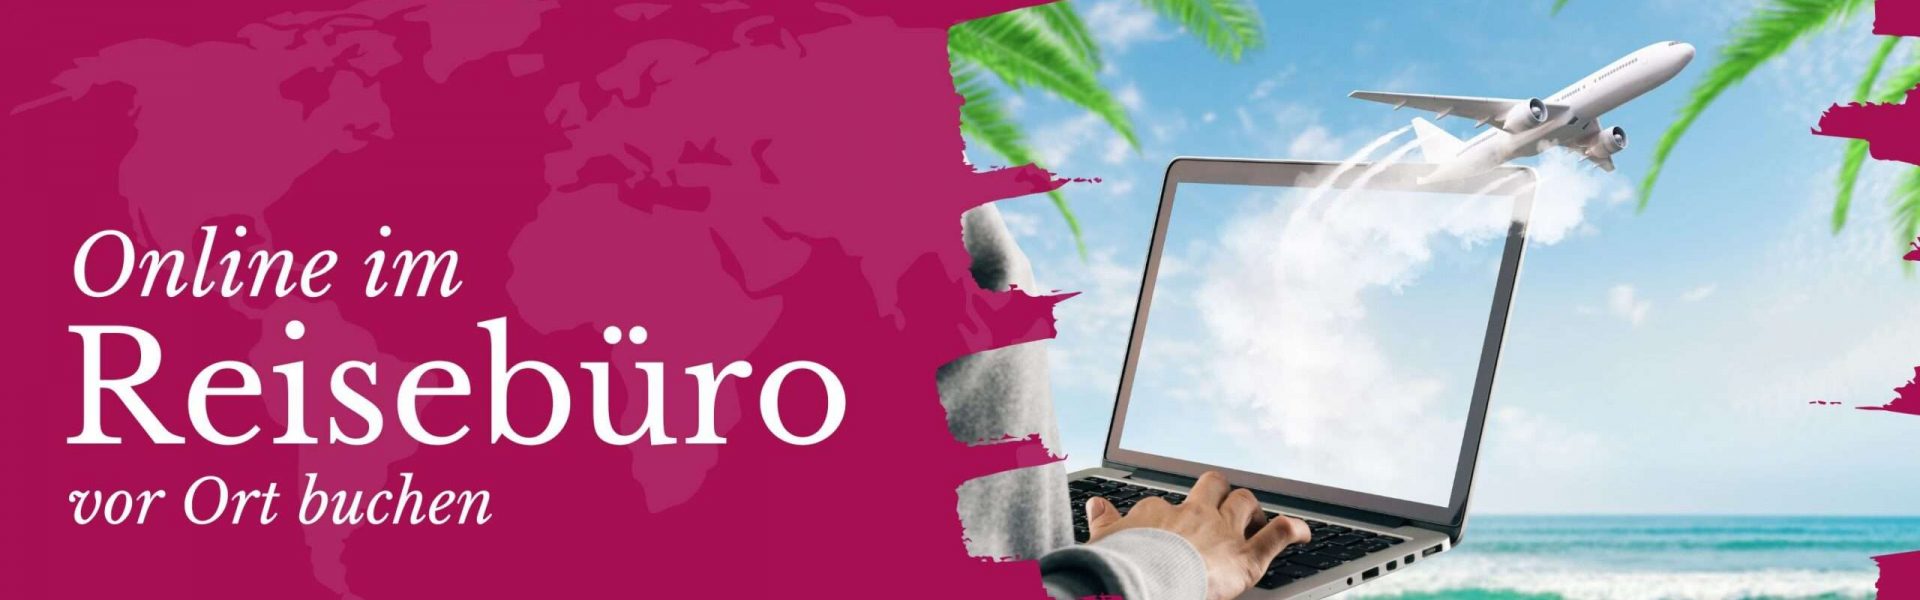 Online im Reisebüro vor Ort buchen Laptop vor einem tropischen Hintergrund.